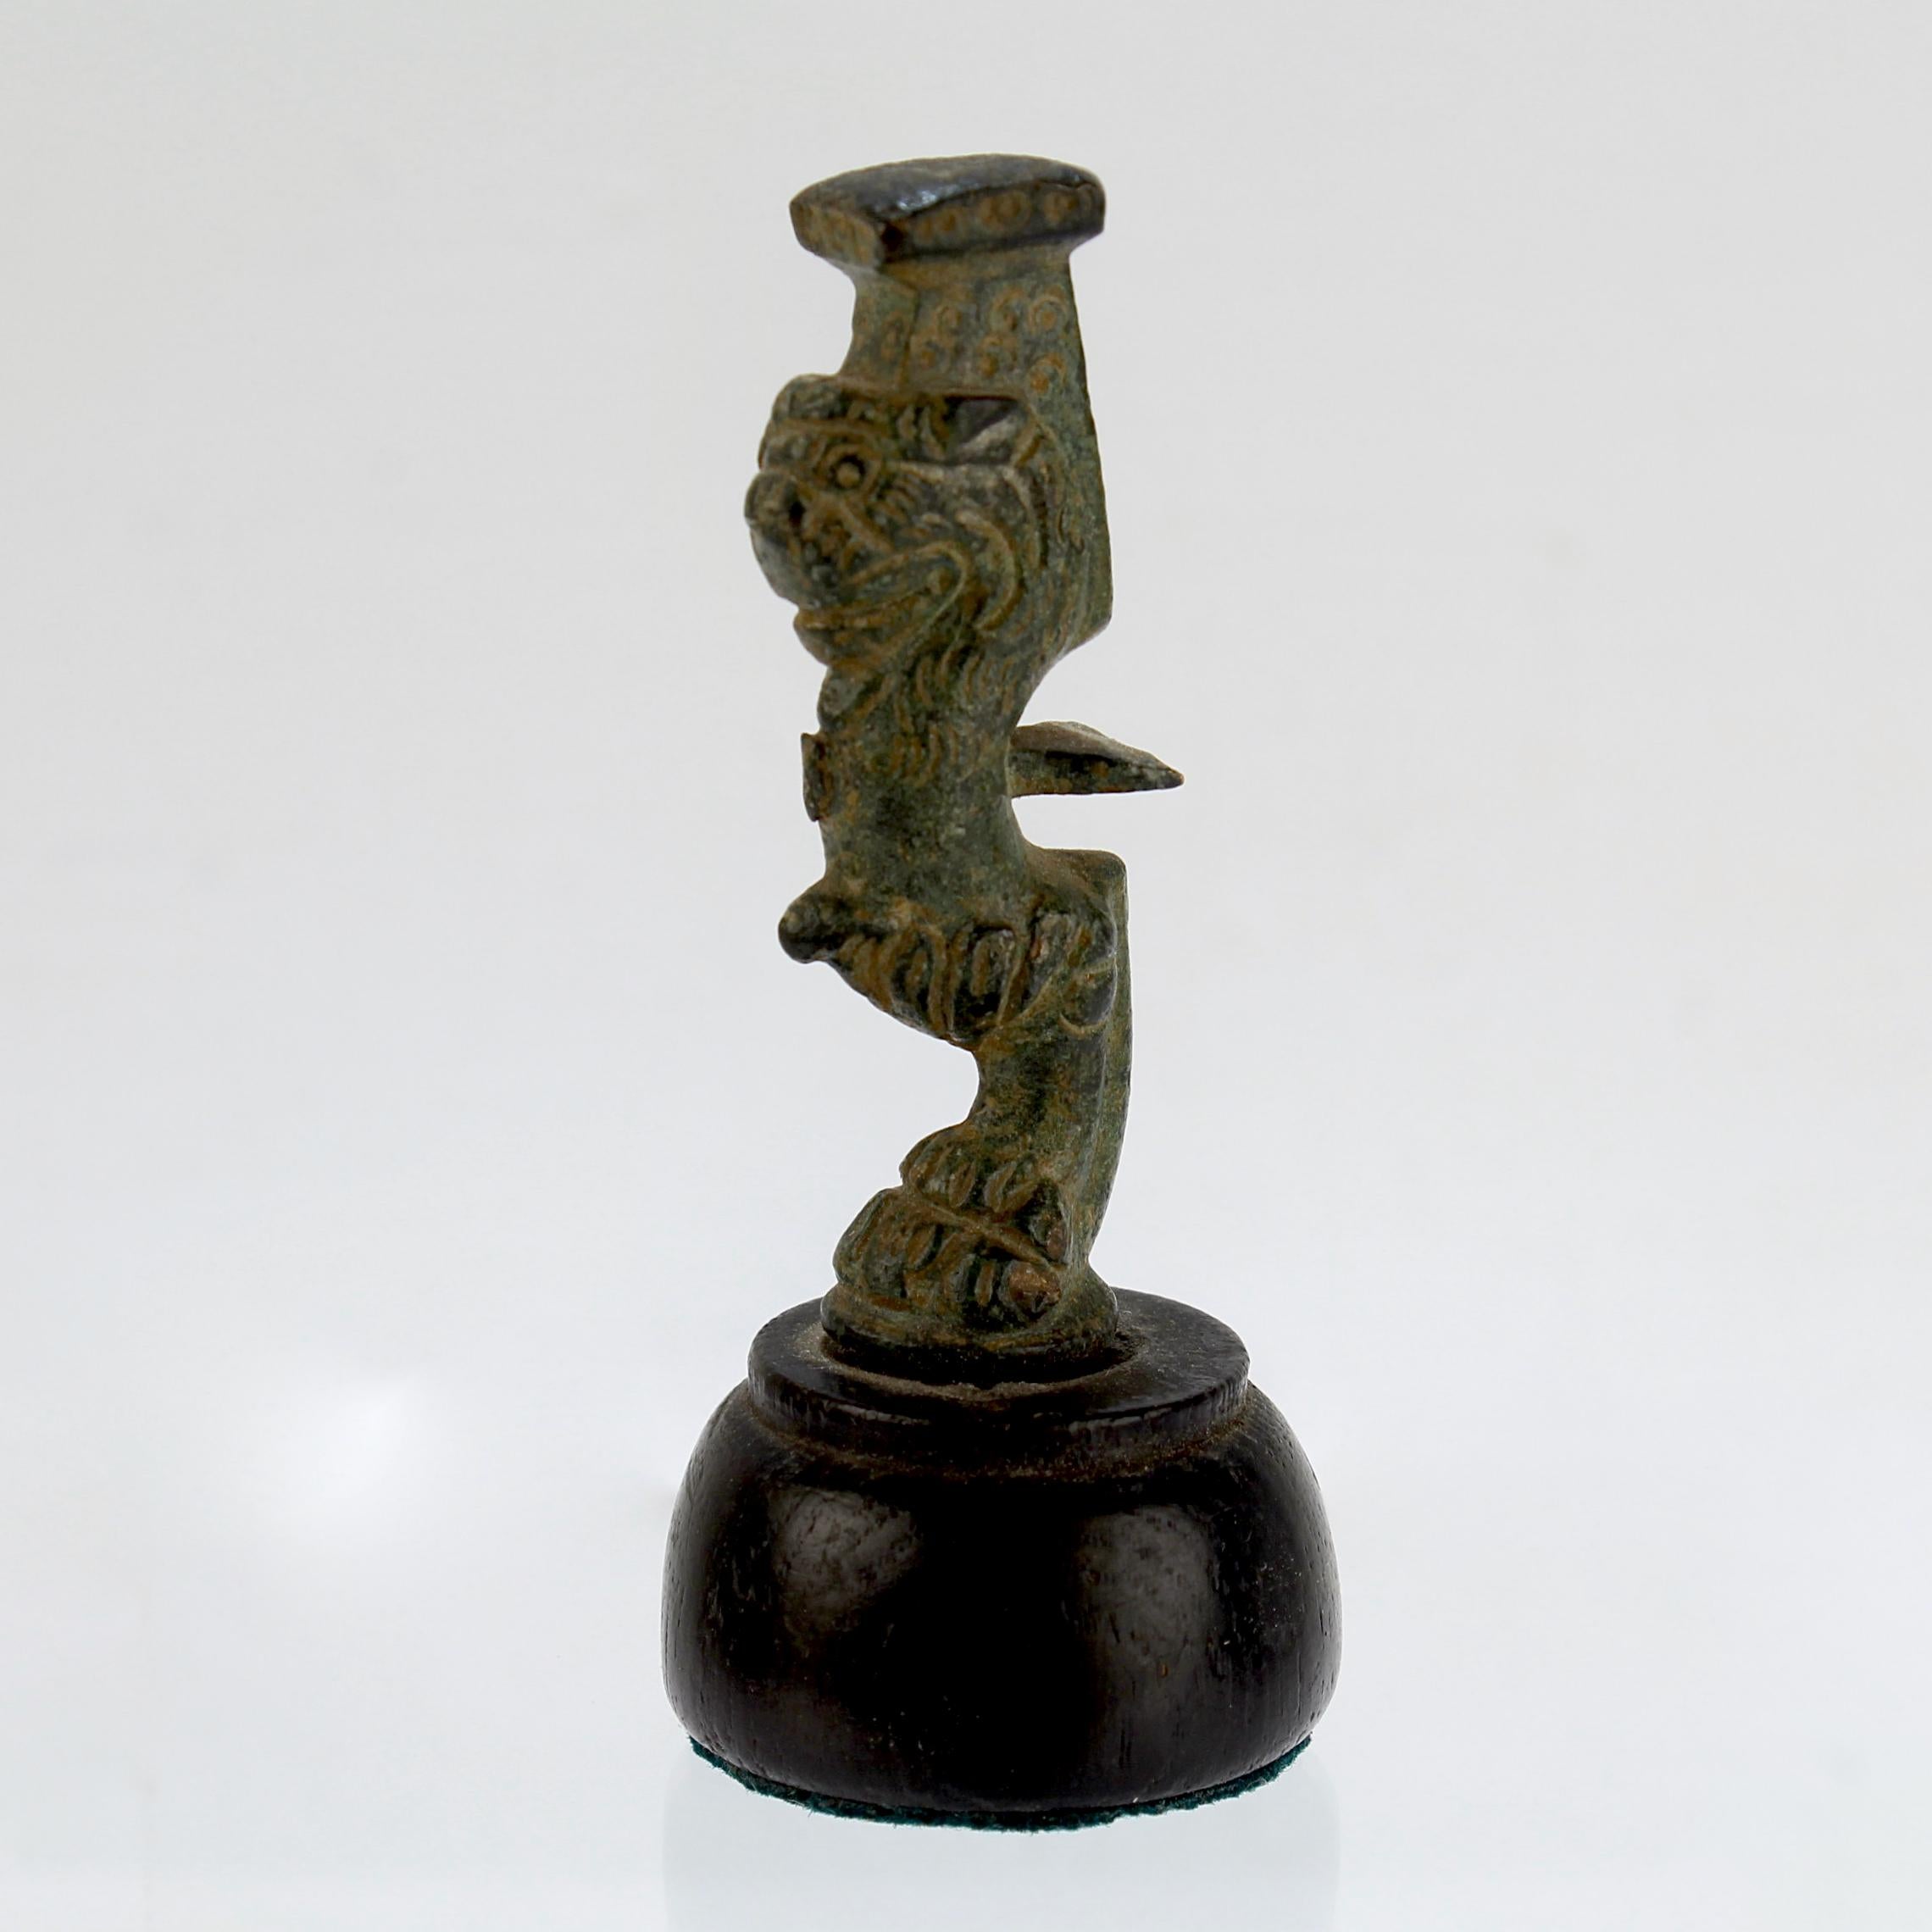 Un bel élément en bronze de l'Antiquité romaine. 

Il semble s'agir d'un pied ou d'un support pour une structure plus grande.

La jambe a un pied en forme de sabot qui supporte une tête de lion et une plate-forme carrée au-dessus. Le pied